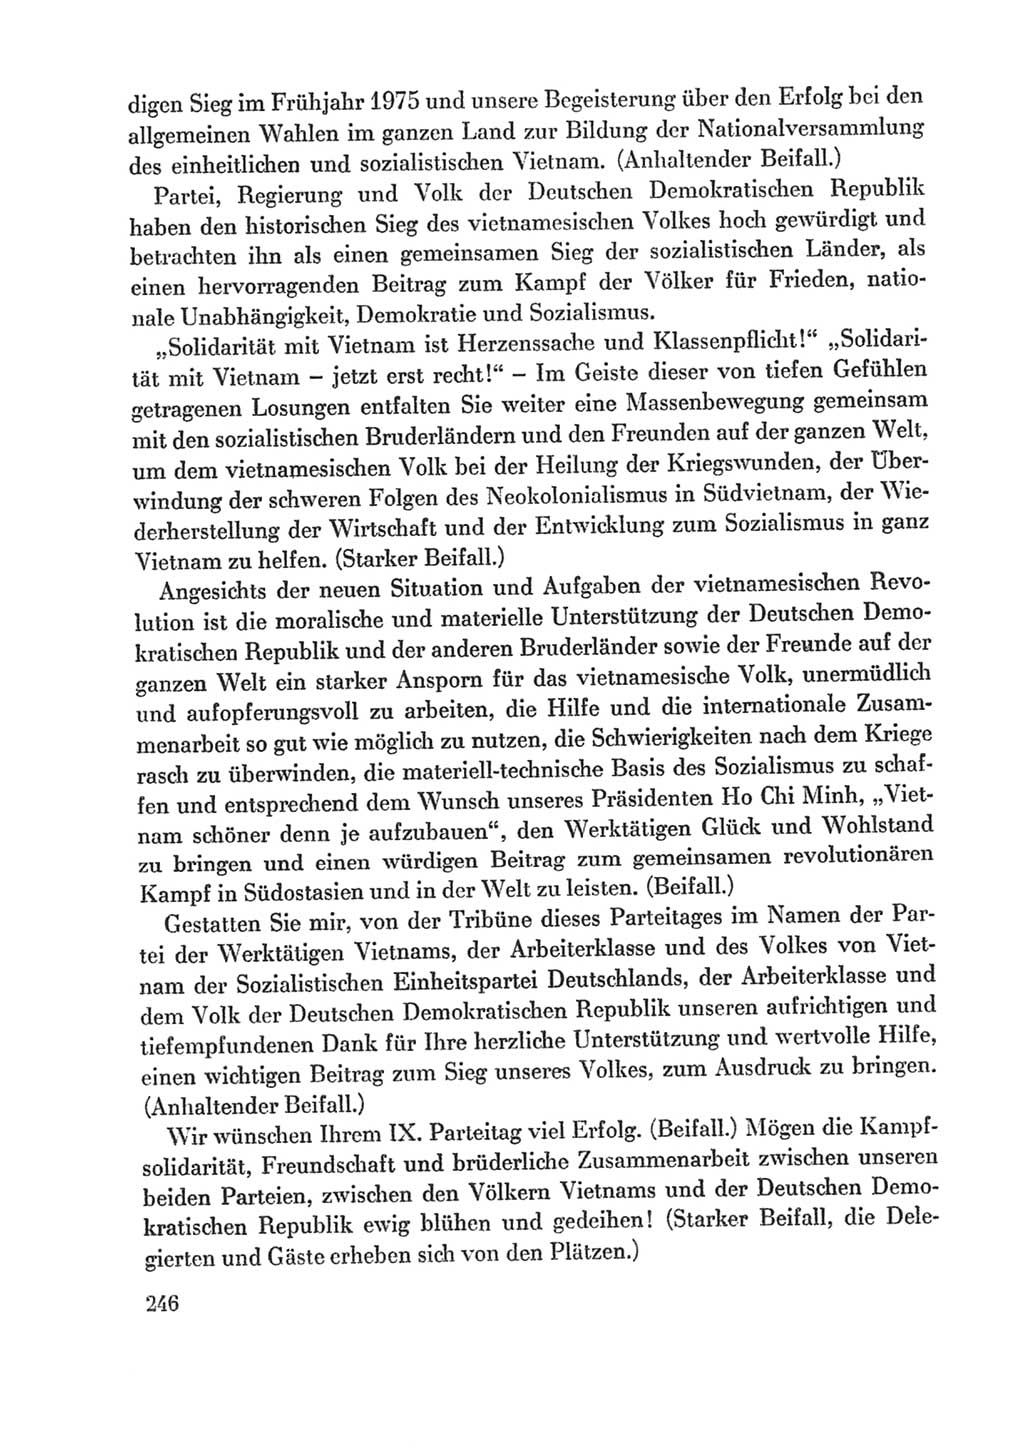 Protokoll der Verhandlungen des Ⅸ. Parteitages der Sozialistischen Einheitspartei Deutschlands (SED) [Deutsche Demokratische Republik (DDR)] 1976, Band 1, Seite 246 (Prot. Verh. Ⅸ. PT SED DDR 1976, Bd. 1, S. 246)